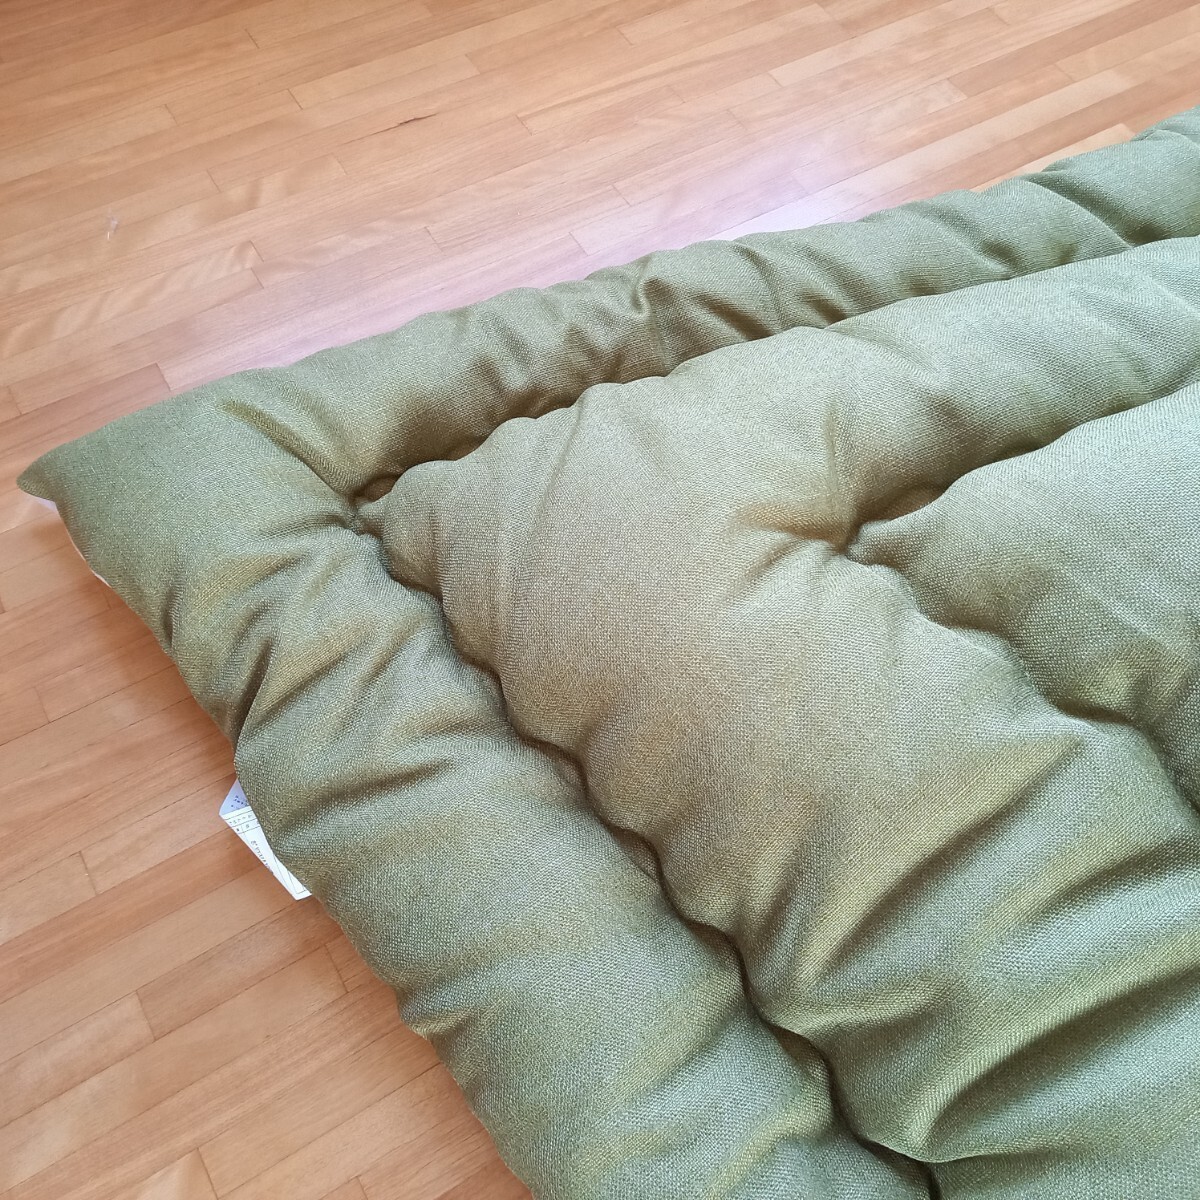  объем толщина .. супер водоотталкивающая отделка супер большой размер прямоугольный котацу futon чистый безопасность сделано в Японии зеленый ( пуховый футон ватное одеяло матрас футон подушка ) выставляется..